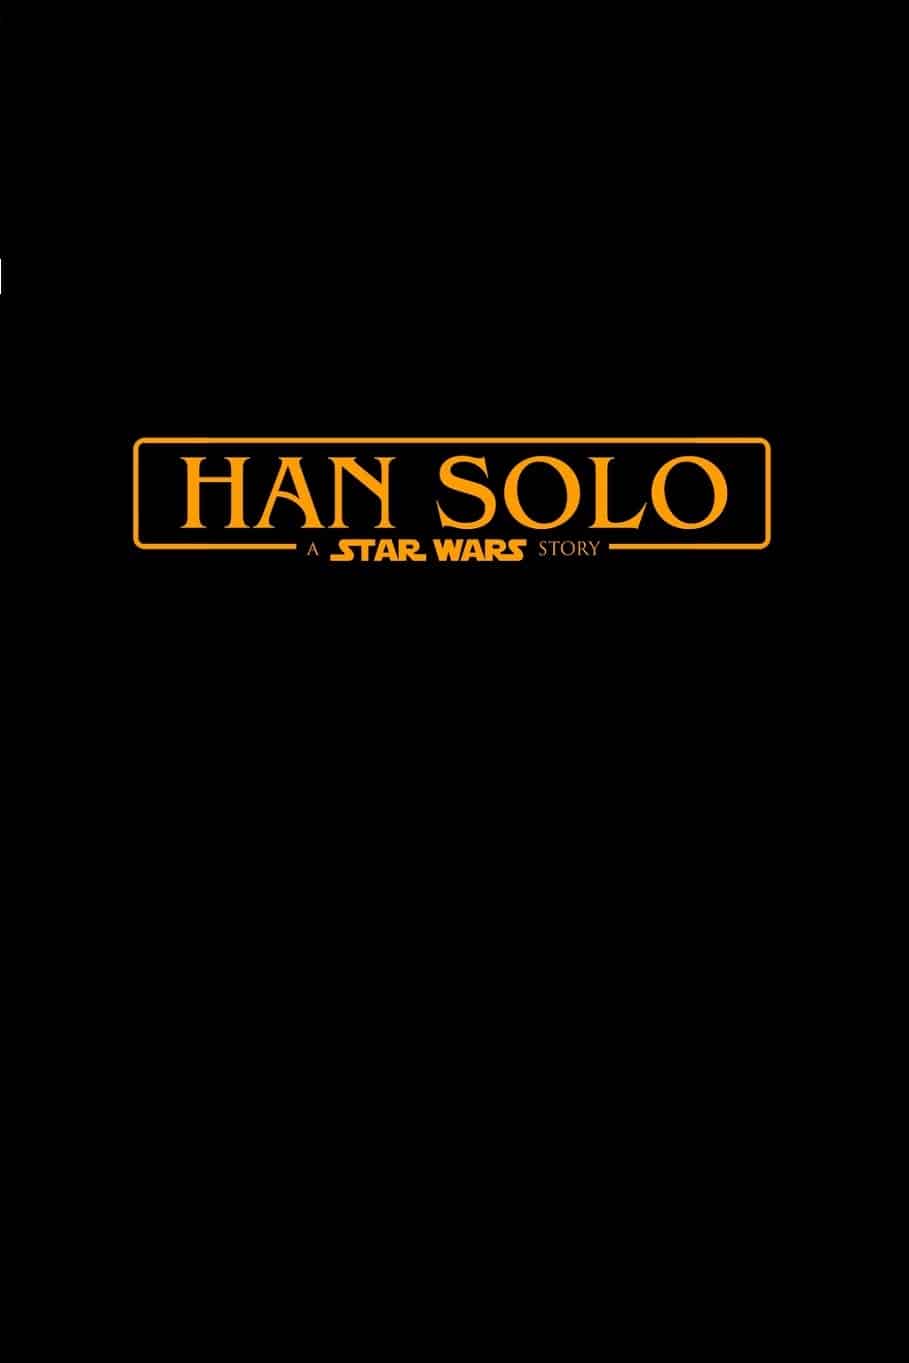 Película de 'Han Solo' (Star Wars)